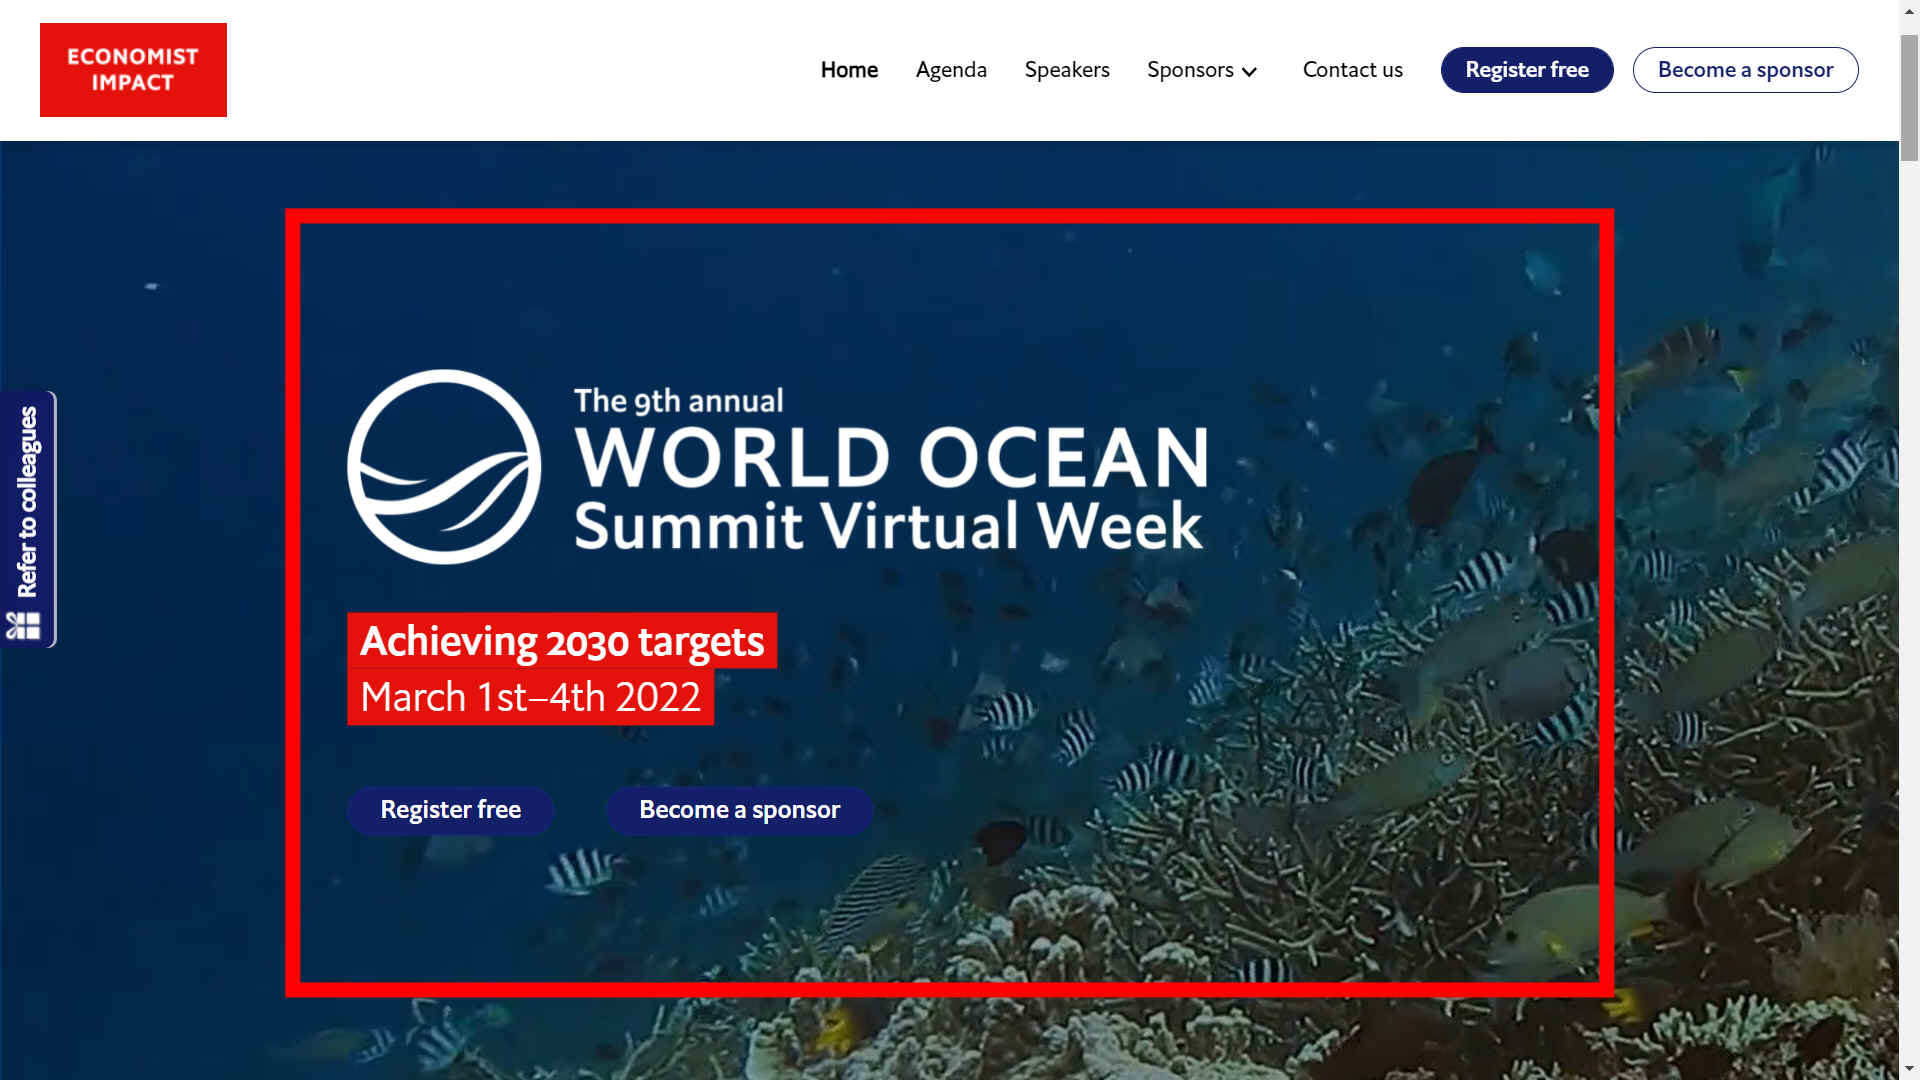 World Ocean Summit 9th annual virtual - Achieving 2030 targets